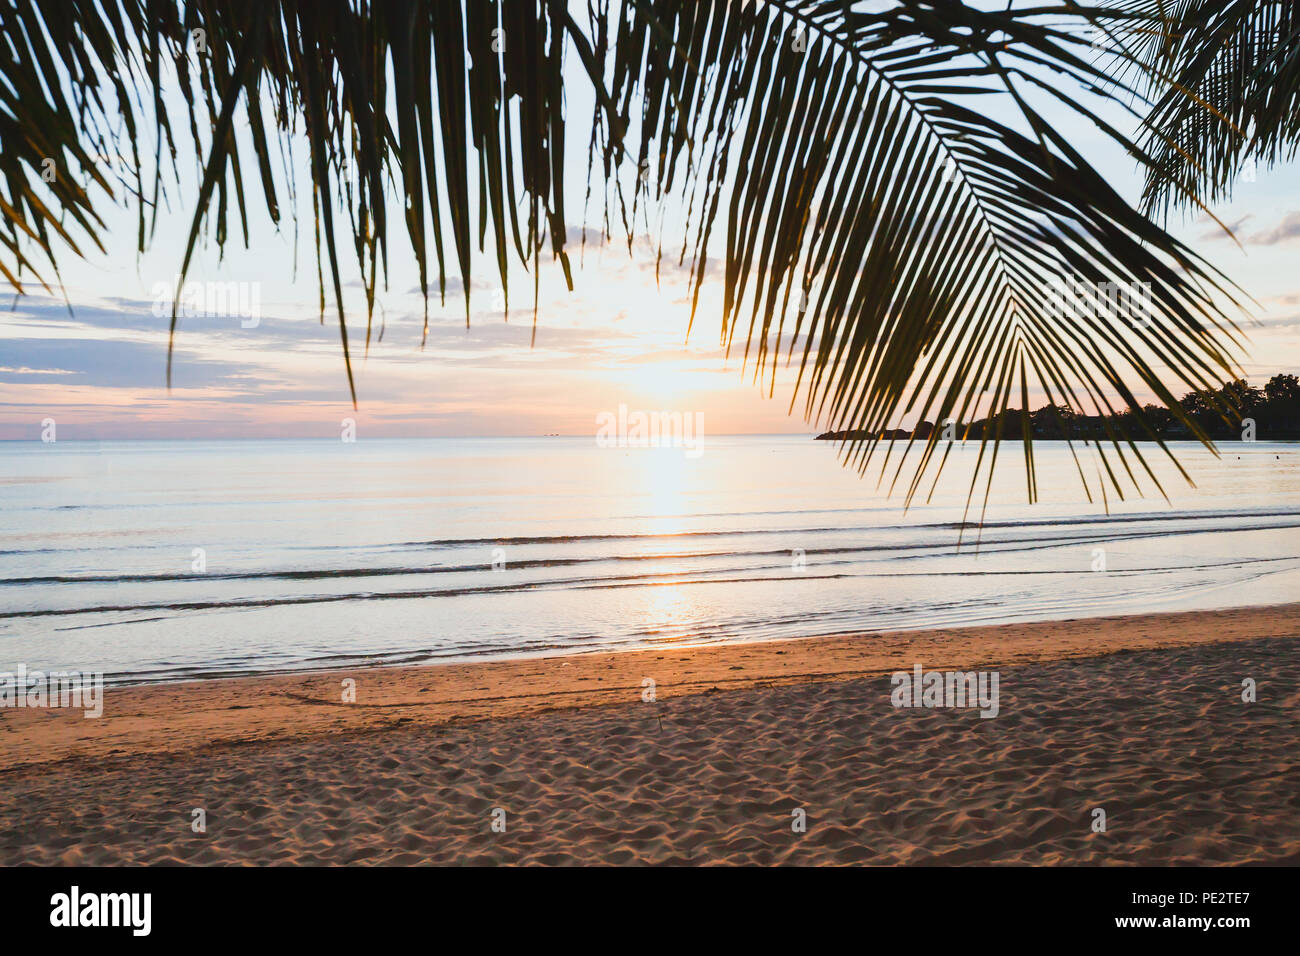 Tropischer Urlaub Strand bei Sonnenuntergang, leere exotischen Urlaub Landschaft mit Palmen, ruhige Natur, Sand und Meer Stockfoto